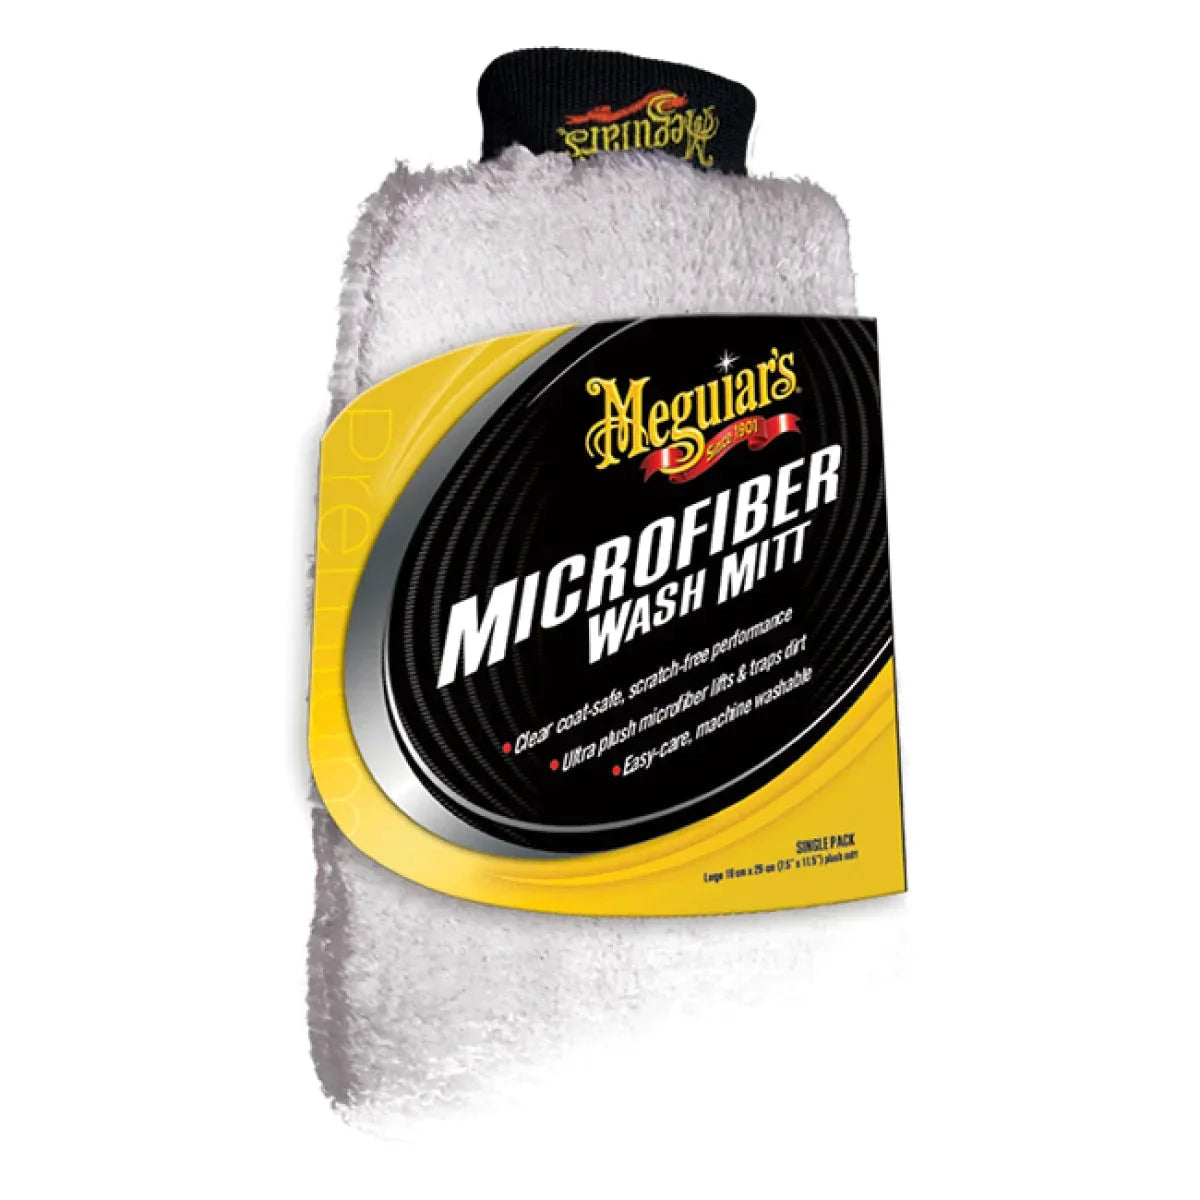 Meguiars-Super Thick Microfiber Wash Mitt-Waschhandschuh-Masori.de